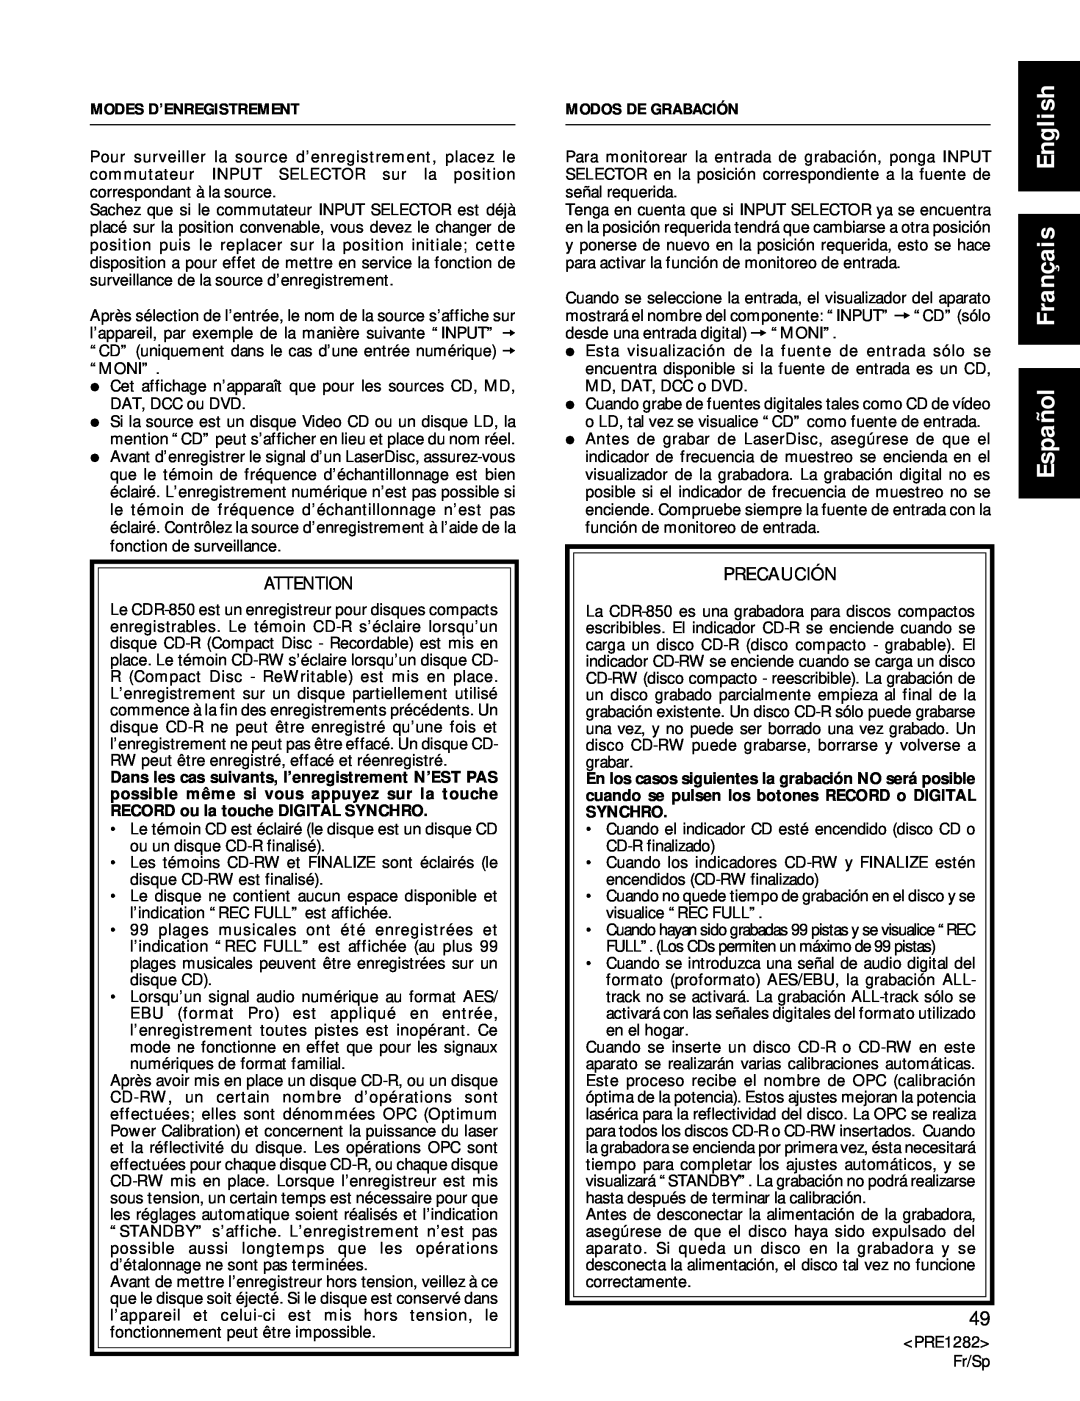 Americana Appliances CDR-850 manual Español Français English, Modes D’Enregistrement, Modos De Grabación, Precaución 